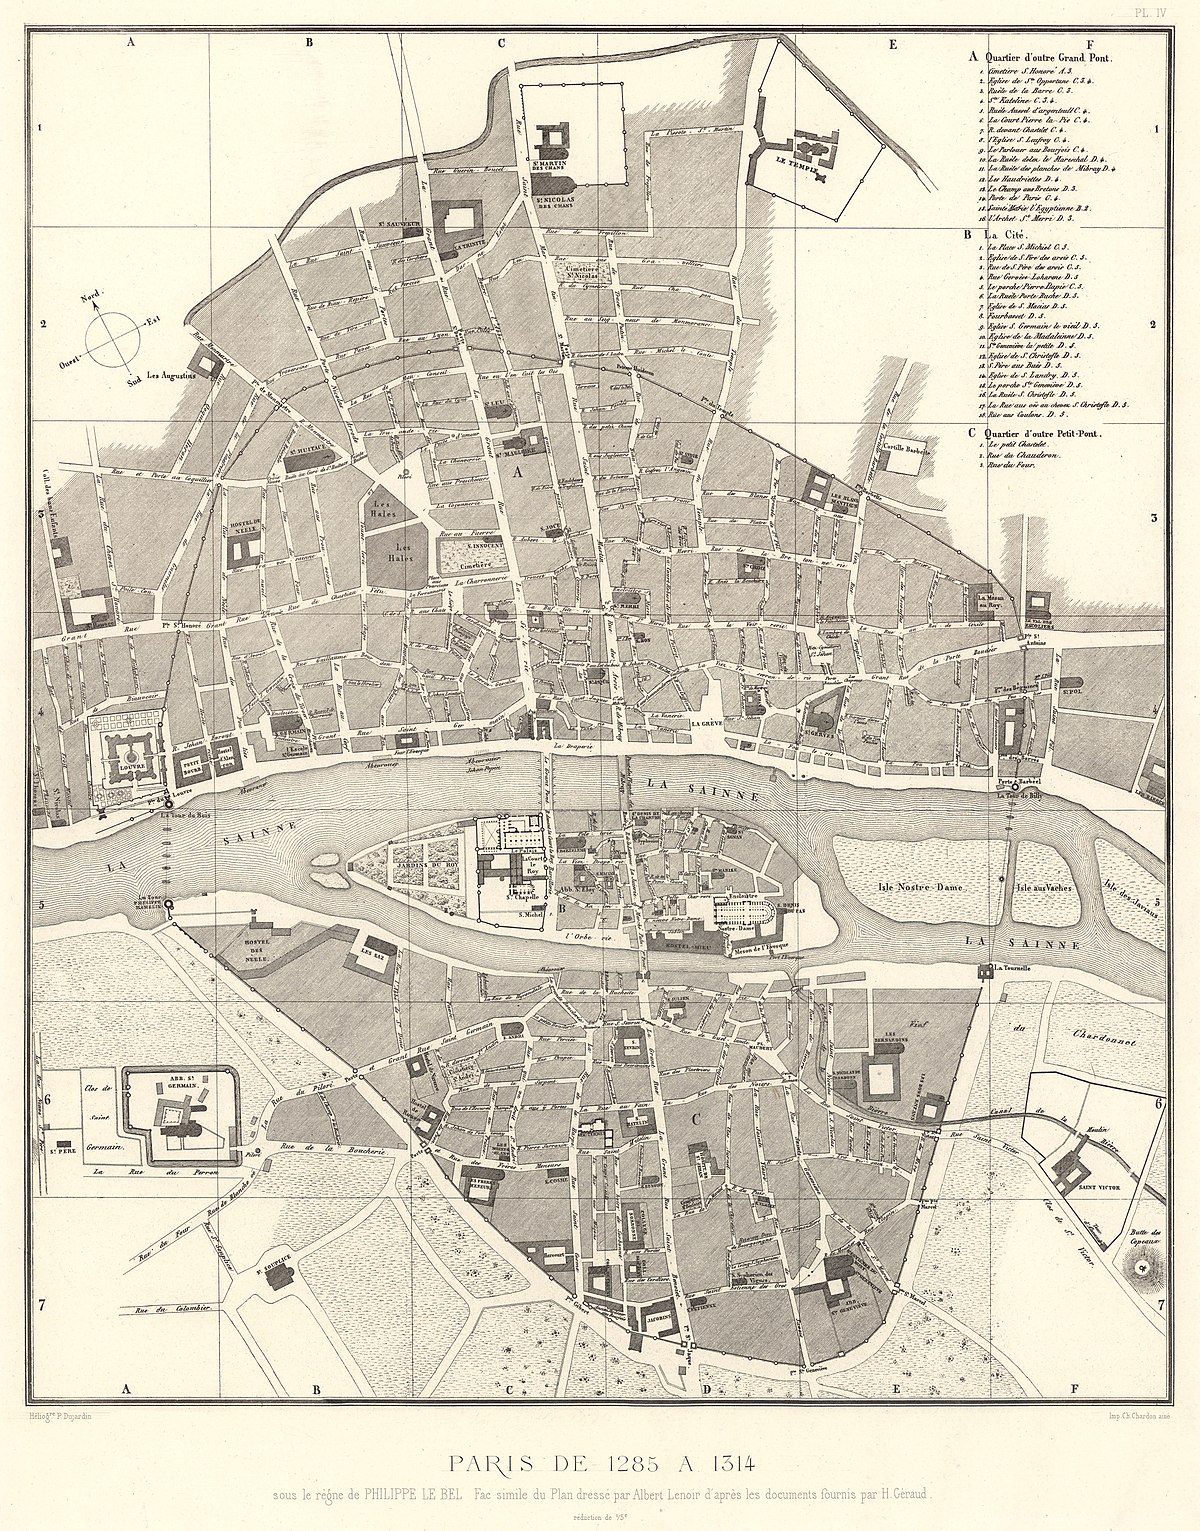 des anciens plans de - Paris de 1285 à 1314 David Rumsey.jpg - Wikimedia Commons